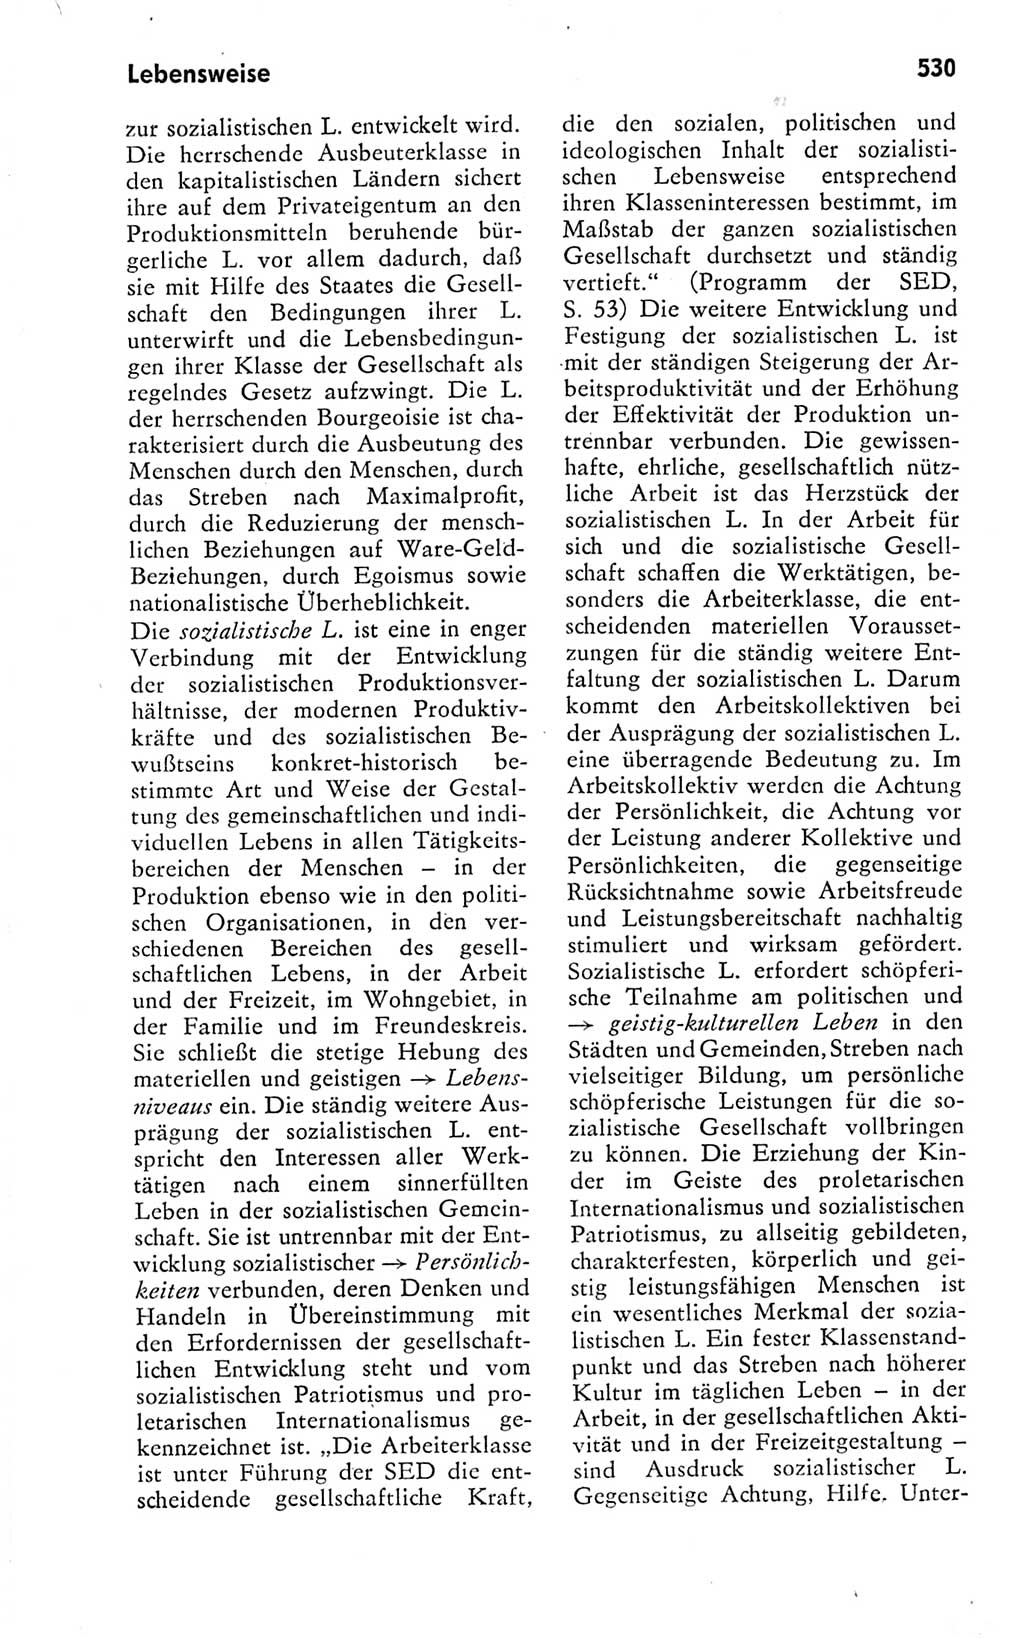 Kleines politisches Wörterbuch [Deutsche Demokratische Republik (DDR)] 1978, Seite 530 (Kl. pol. Wb. DDR 1978, S. 530)